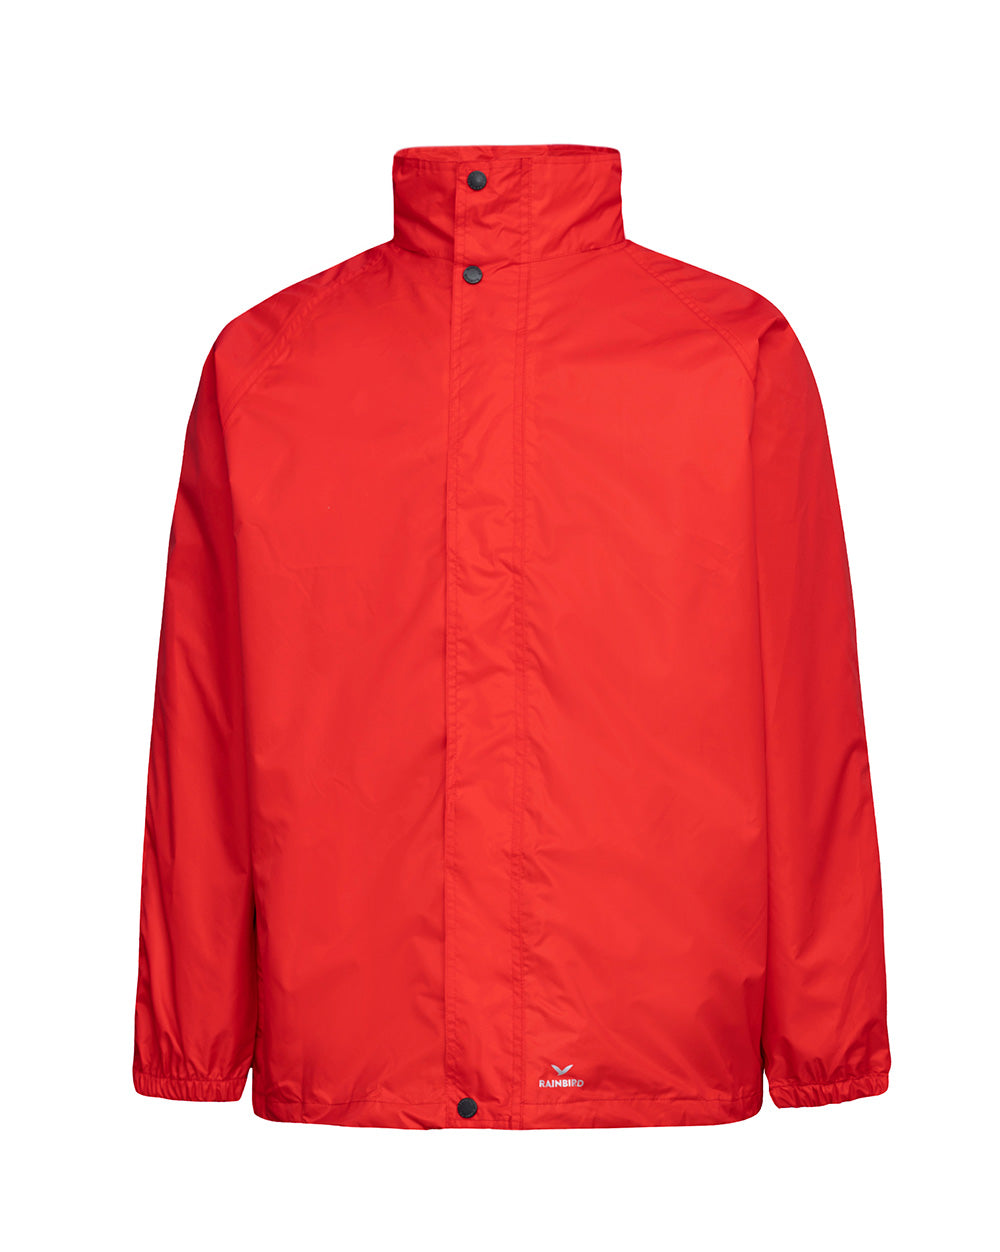 STOWaway Jacket in Red